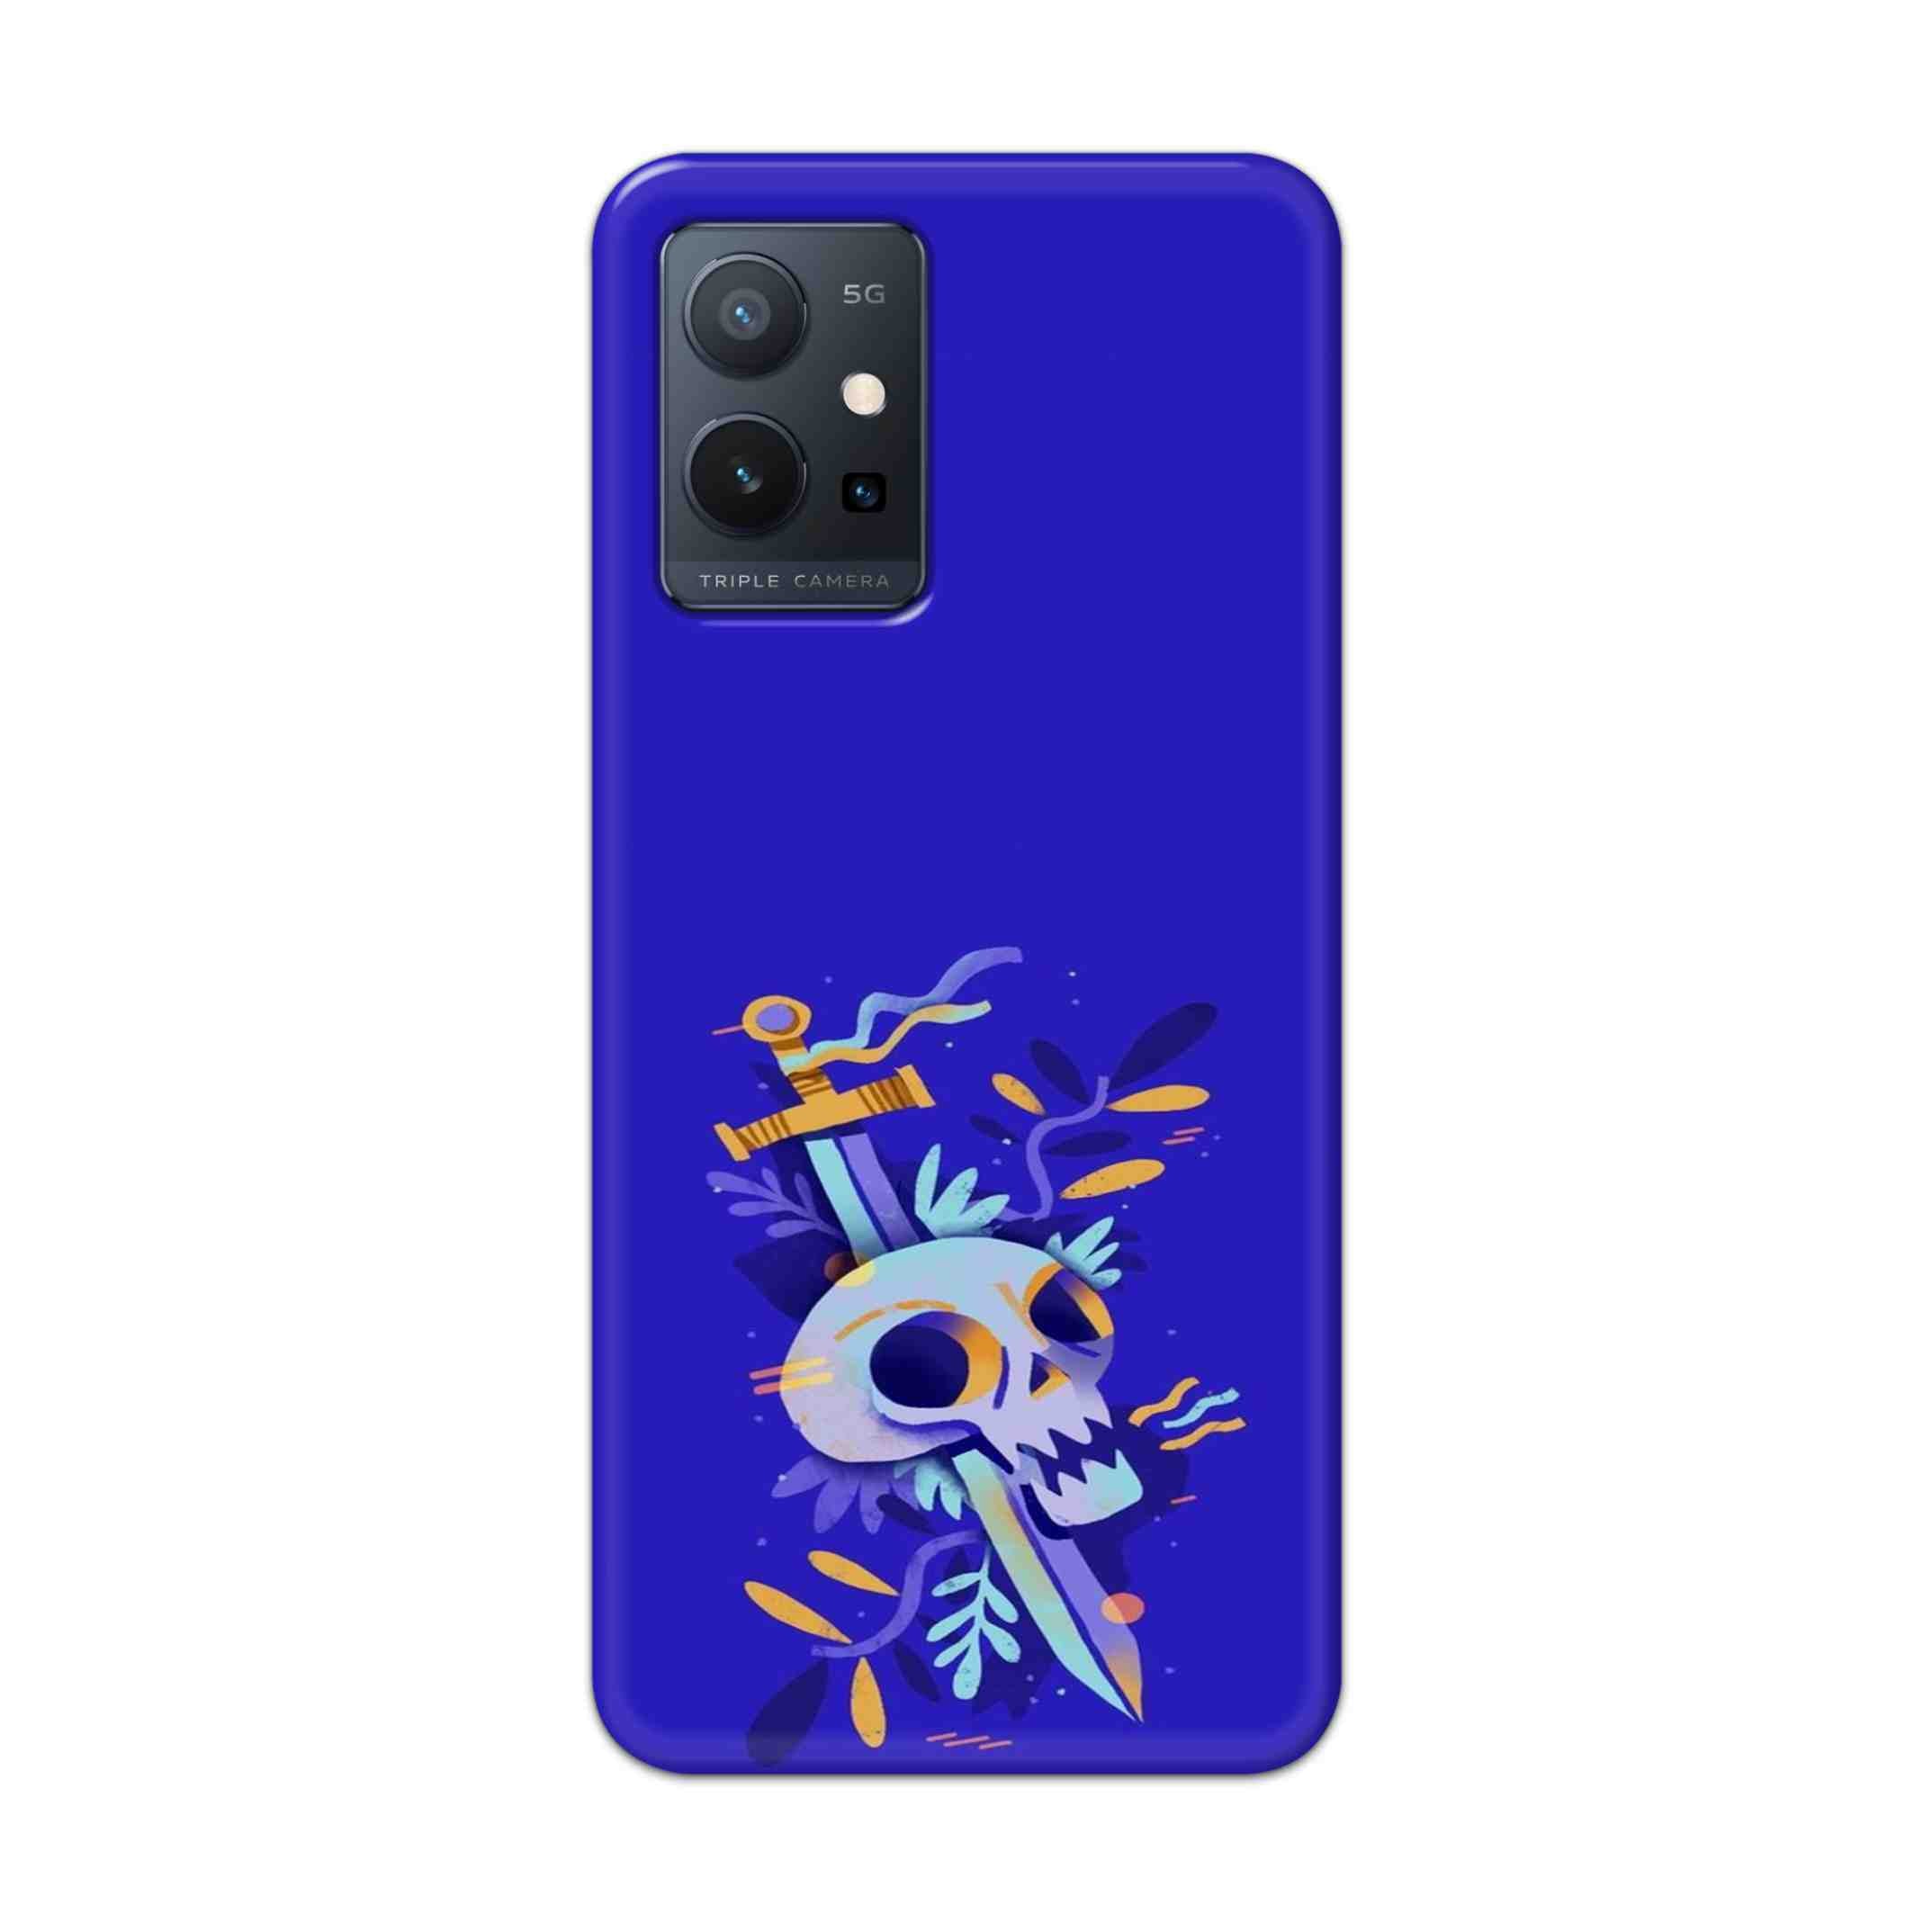 Buy Blue Skull Hard Back Mobile Phone Case Cover For Vivo T1 5G Online